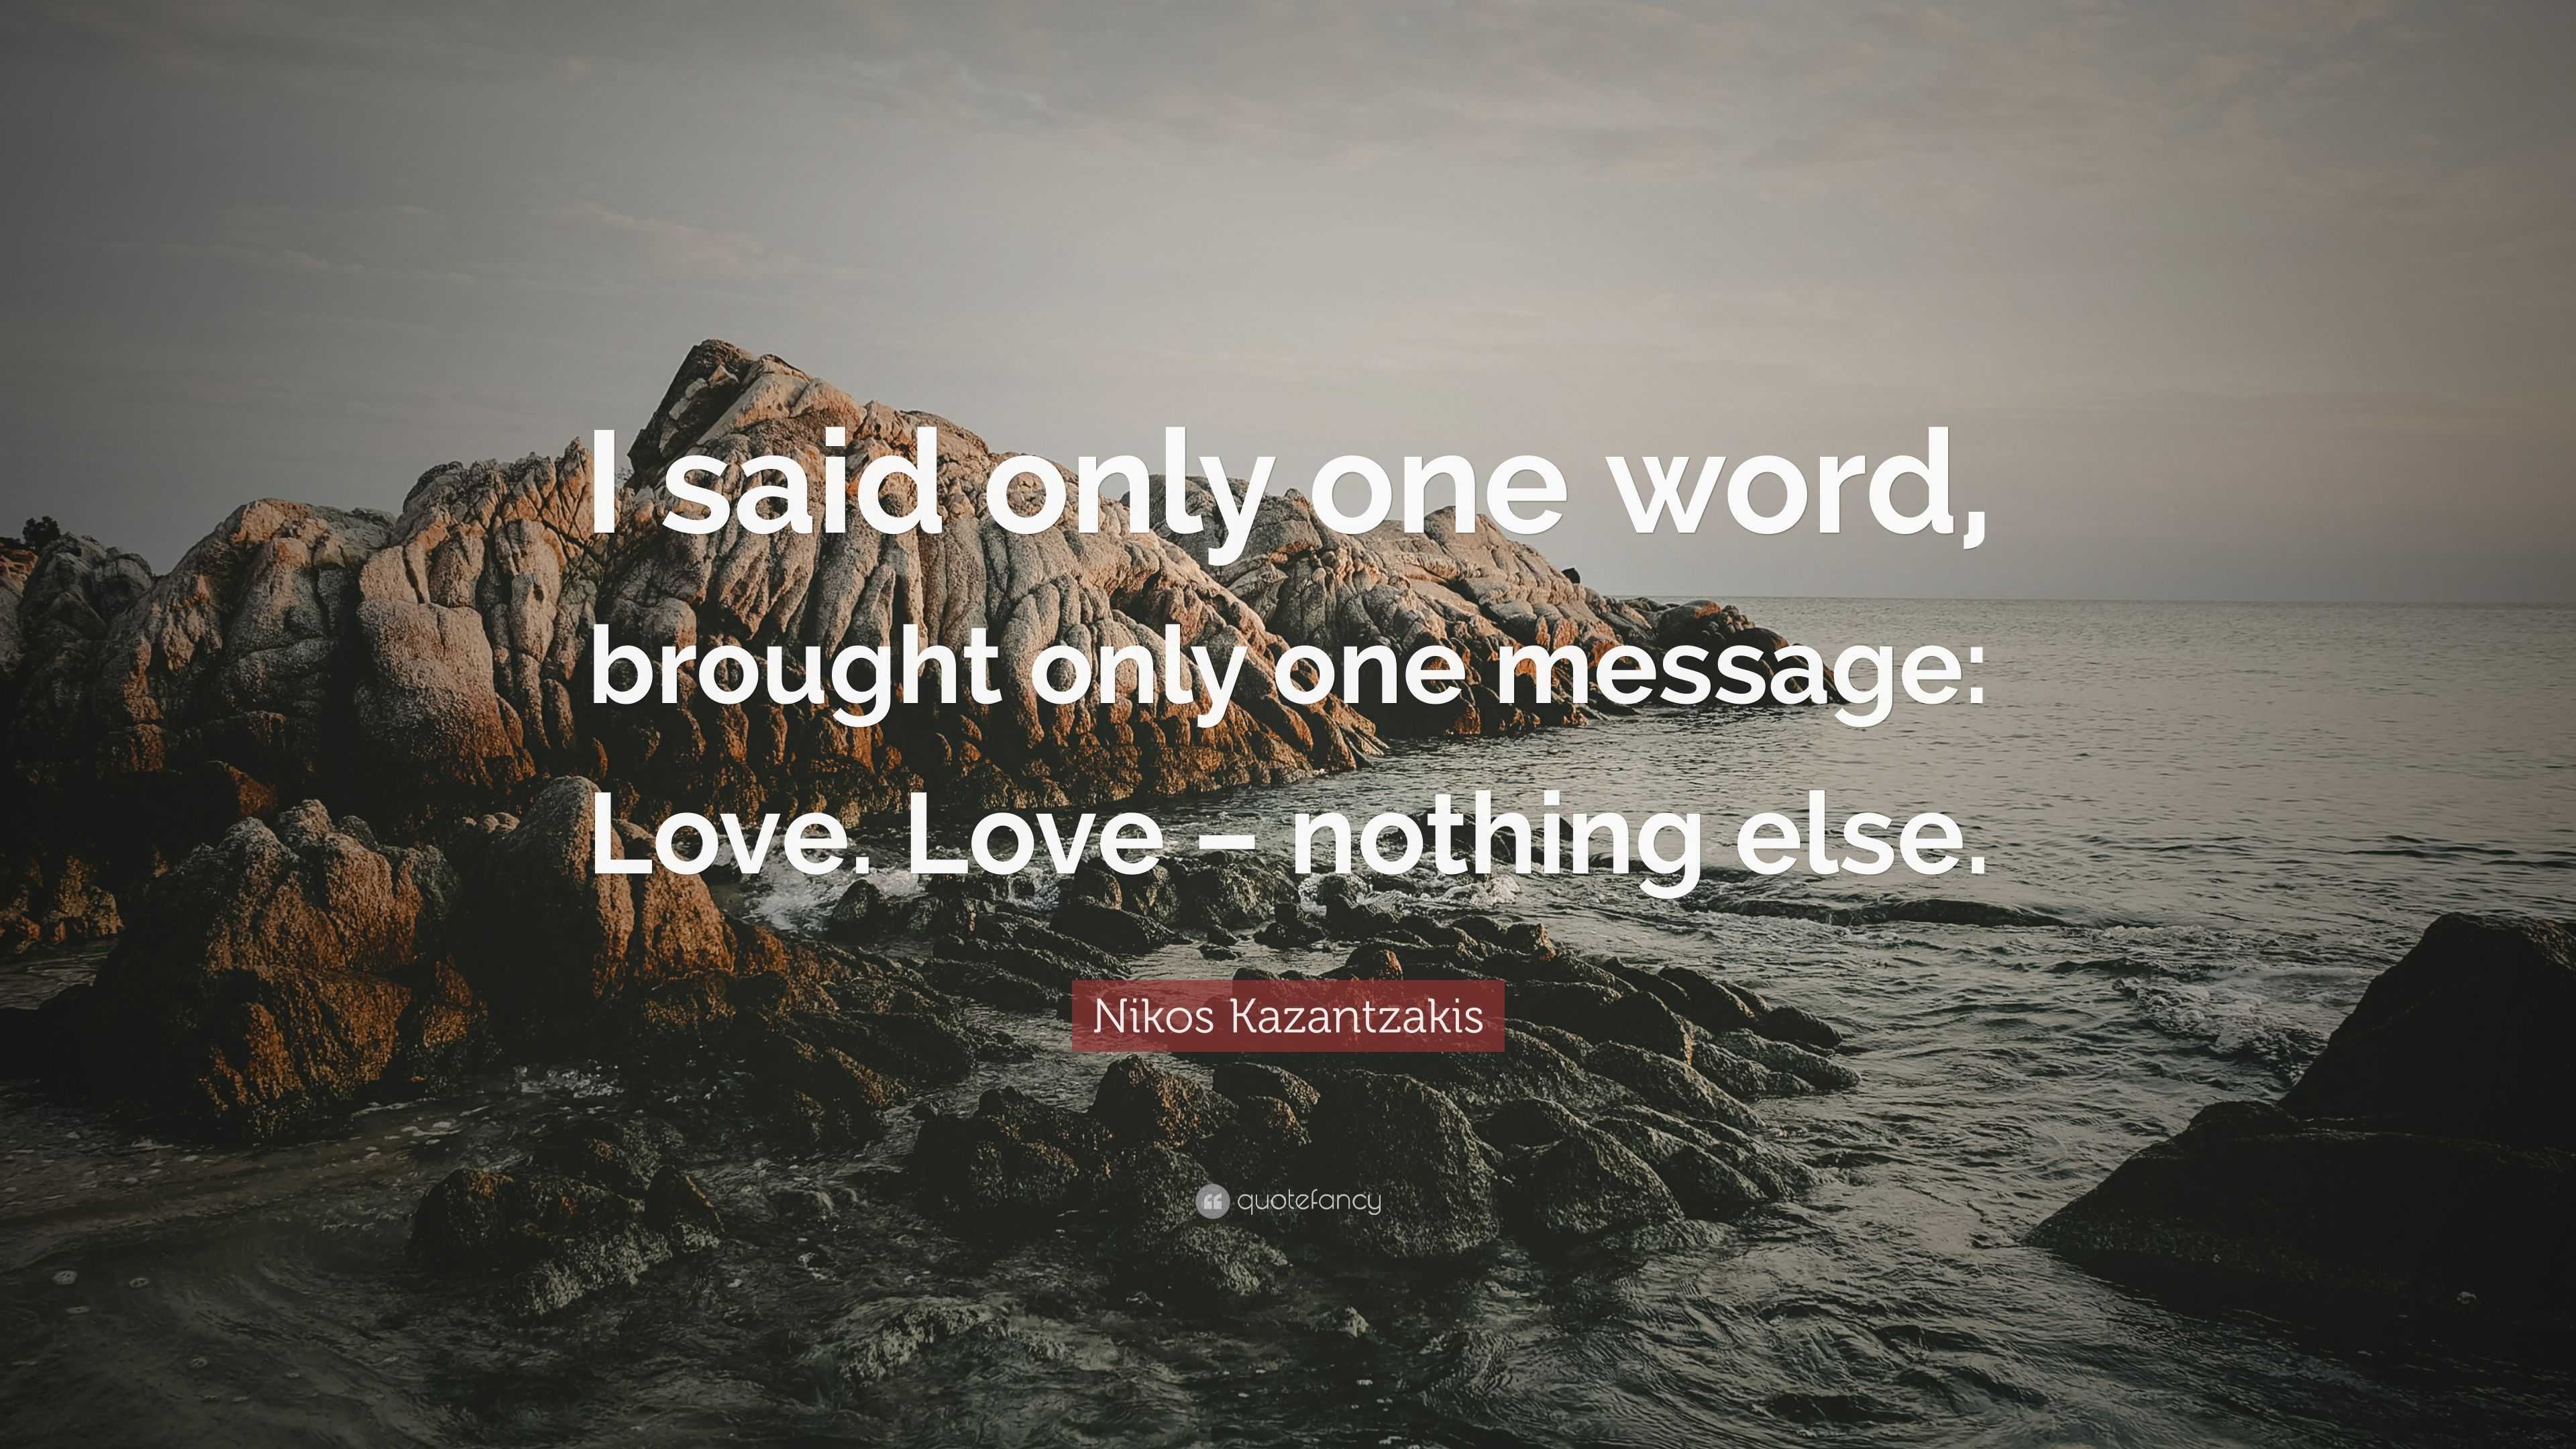 Nikos Kazantzakis Quote “I said only one word brought only one message